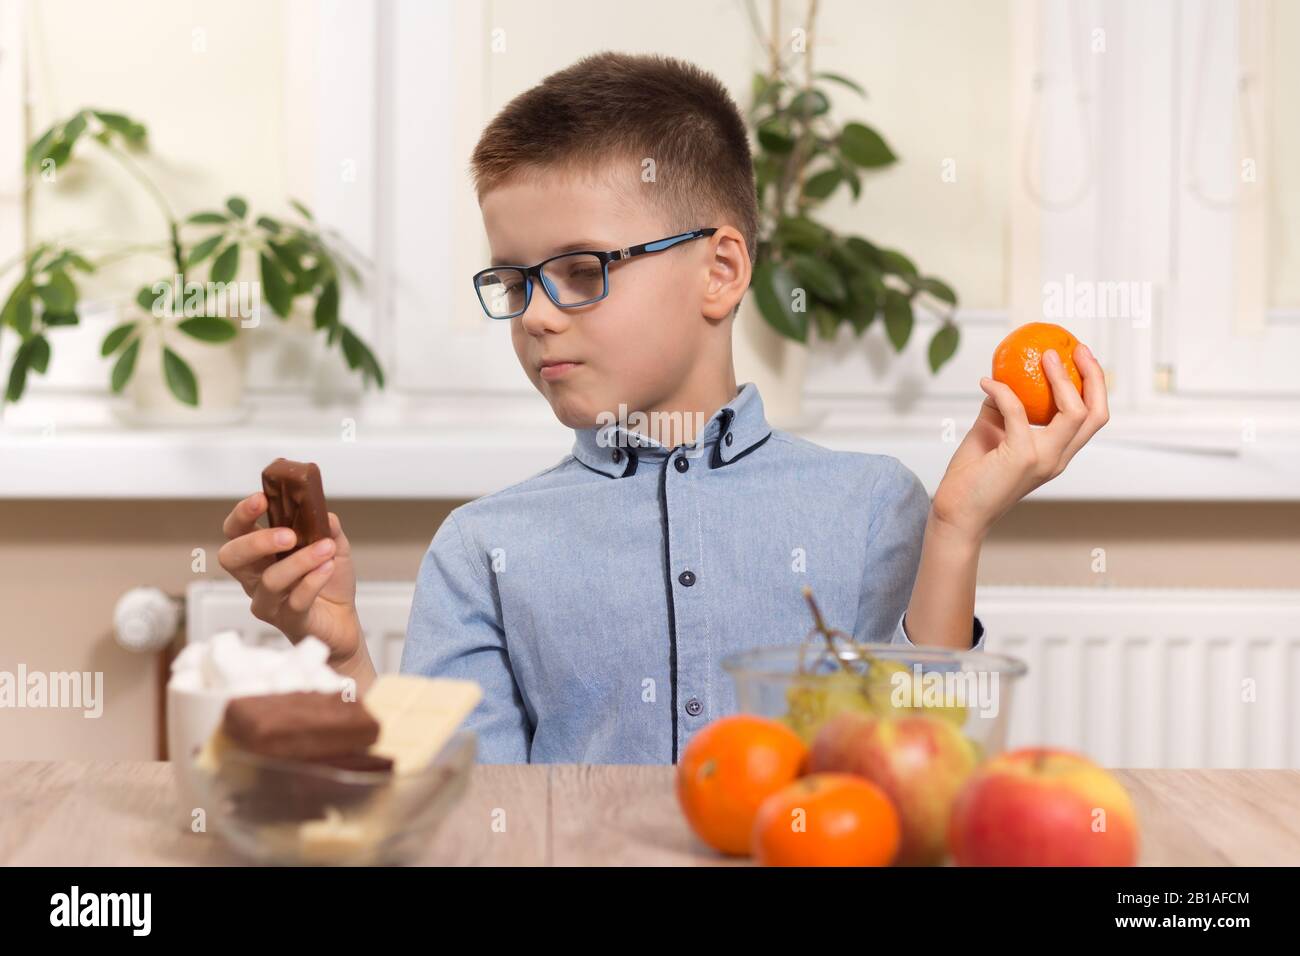 Schokoladenriegel oder Tangerinfrucht. Der schulische Junge sitzt am Tisch und fragt sich, was er wählen soll. Stockfoto